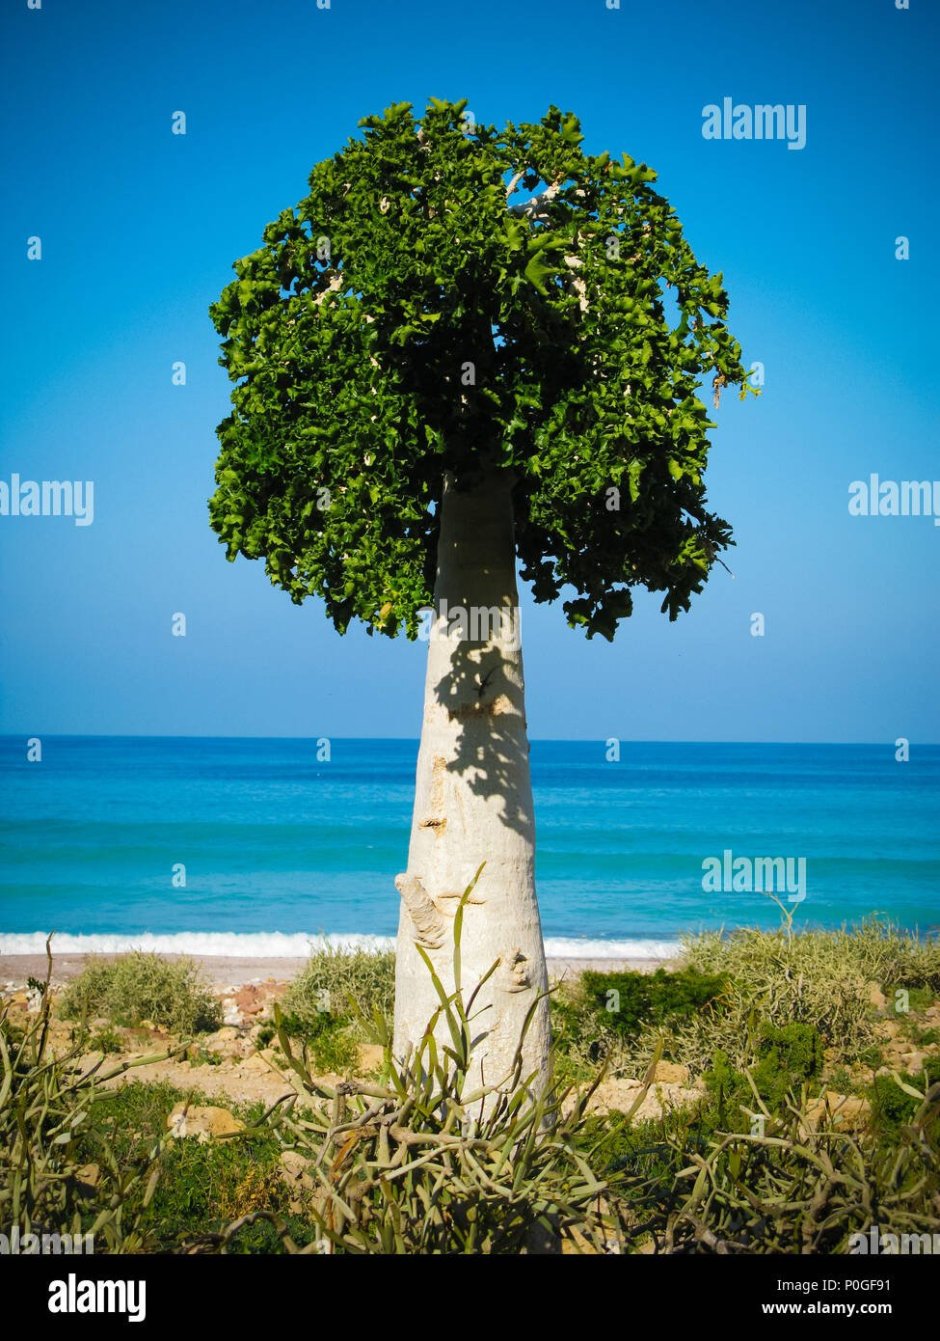 Билимби огуречное дерево